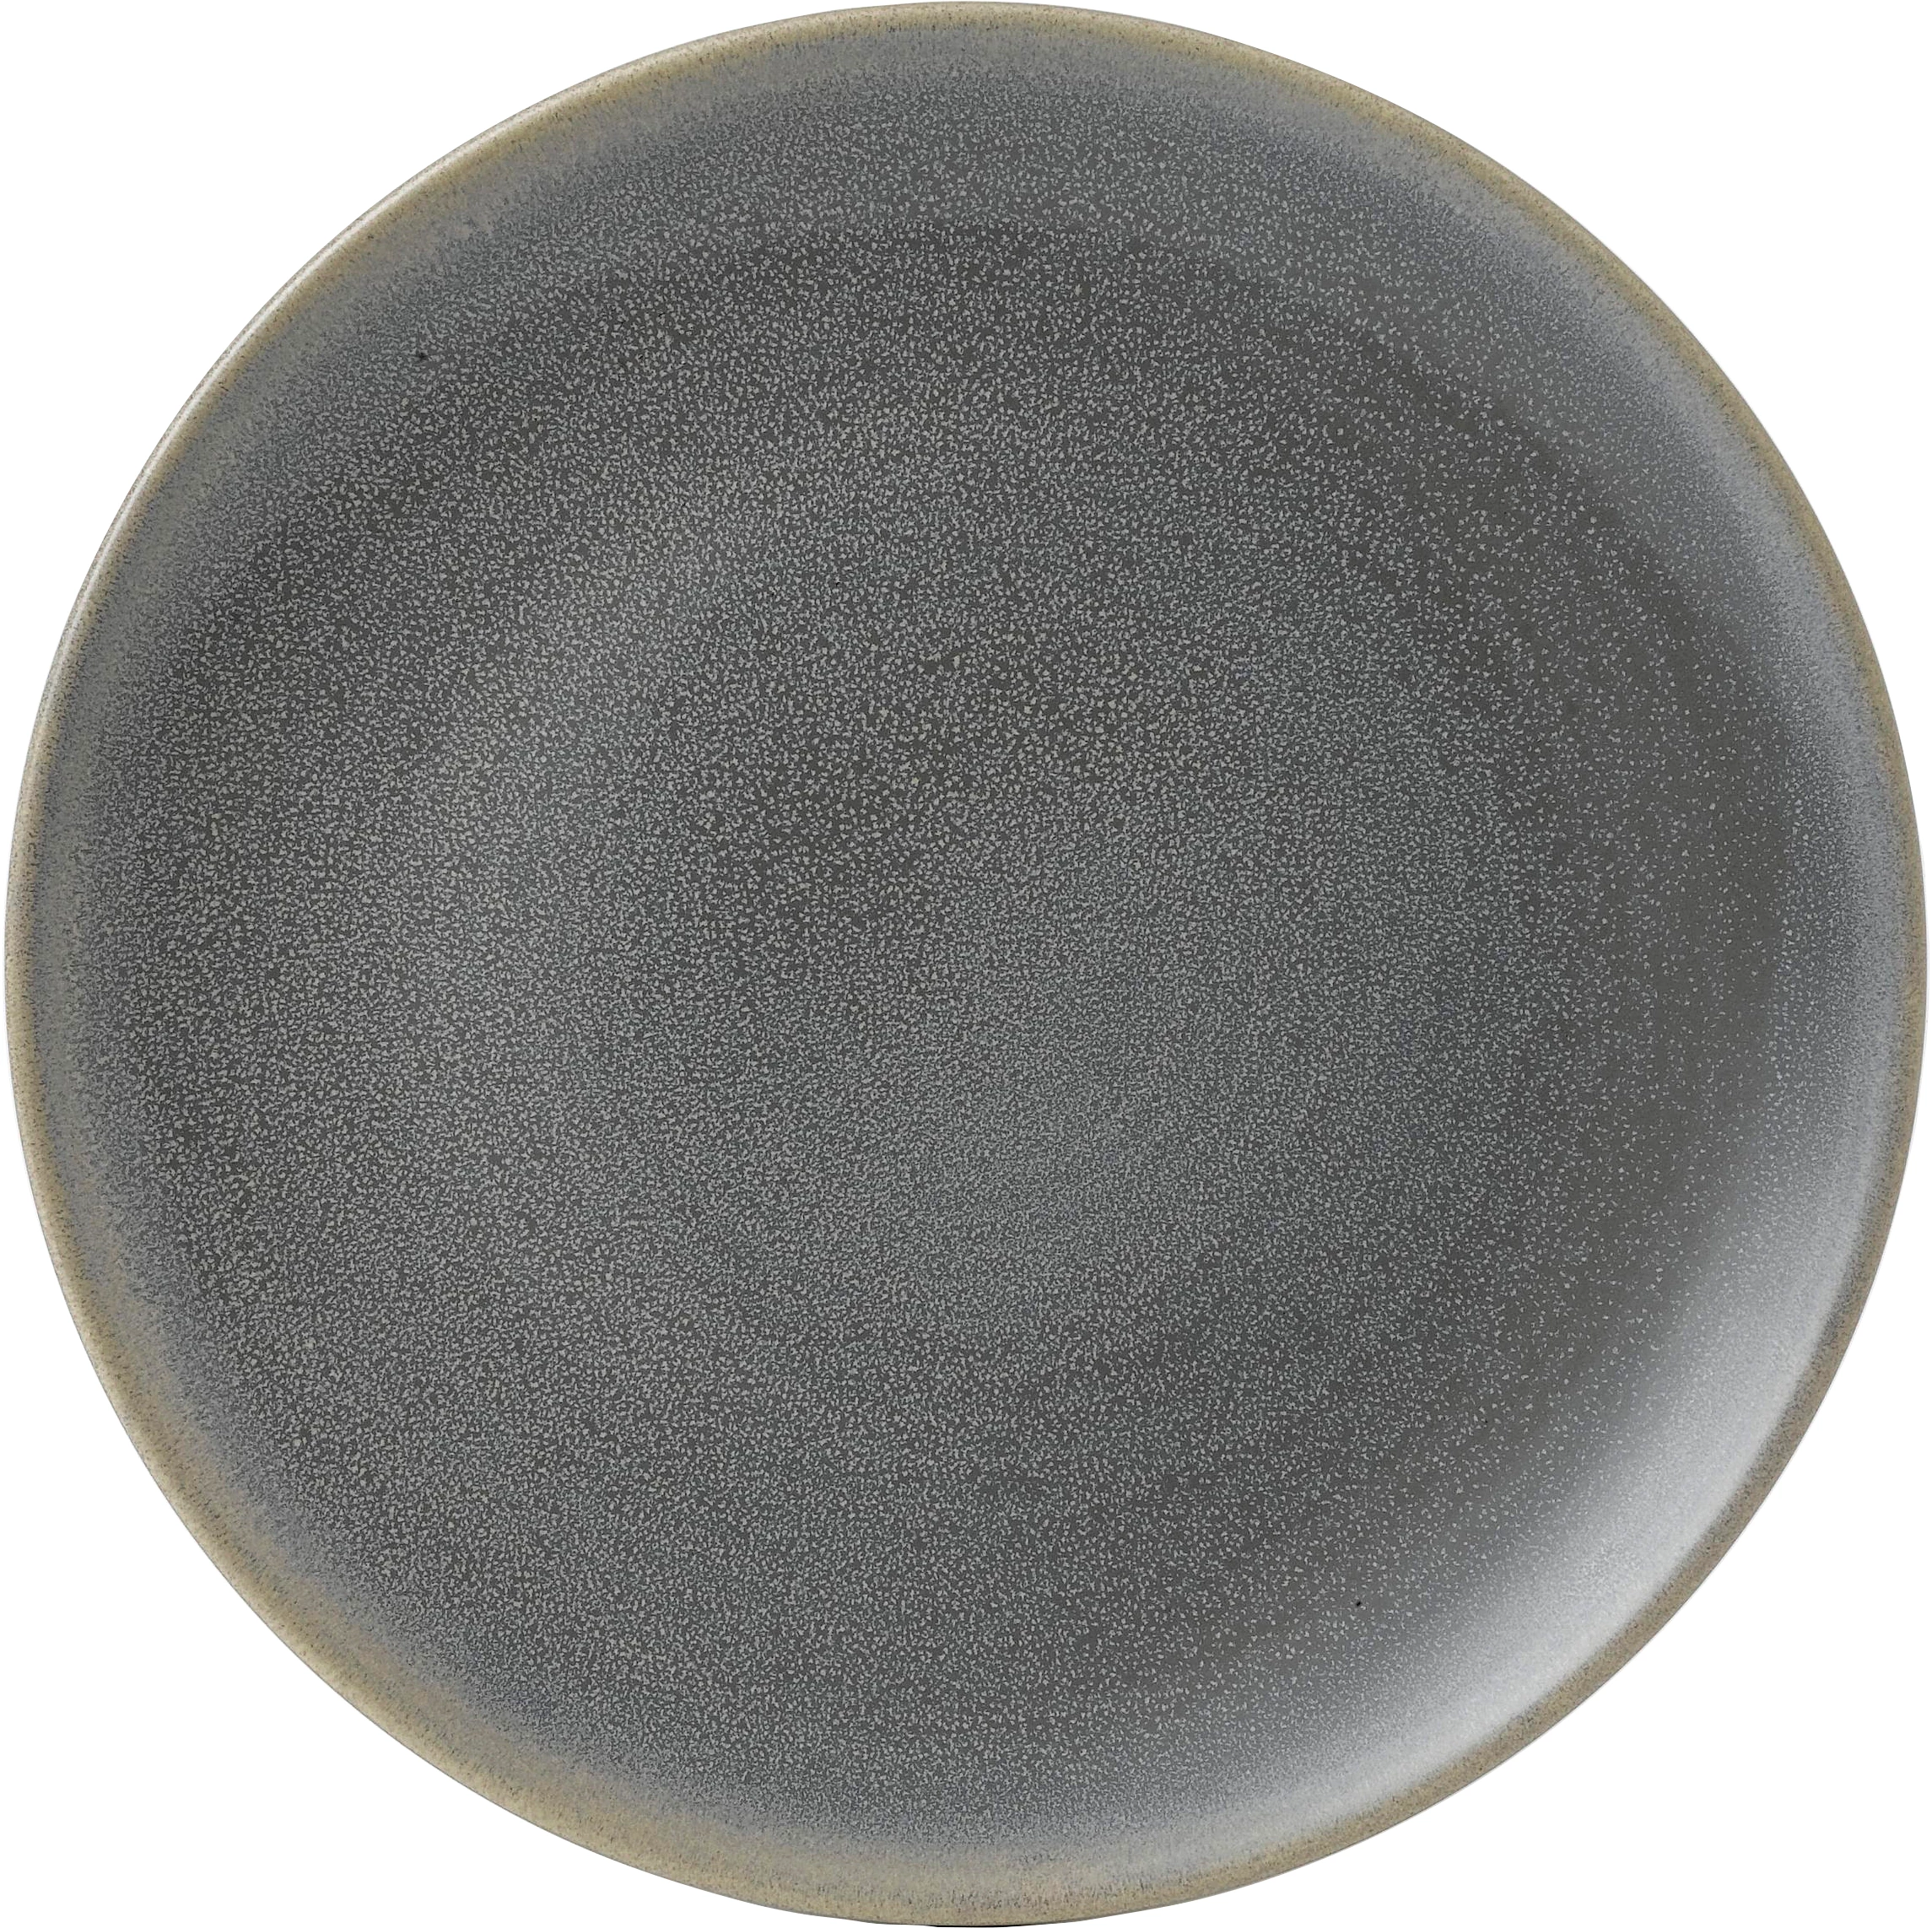 Dudson Evo Granite flad tallerken, granit, ø27,3 cm